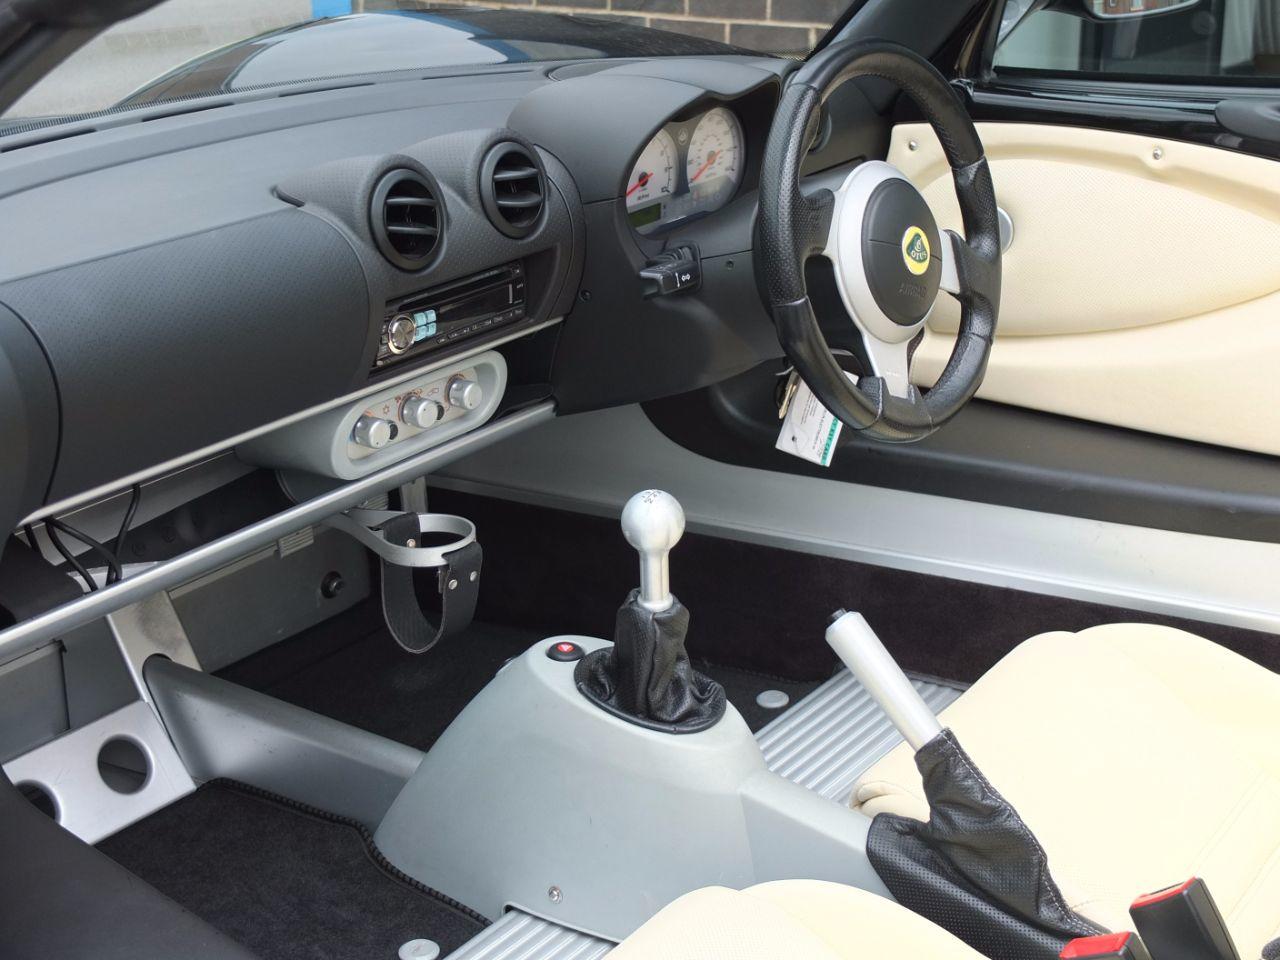 Lotus Elise 1.8 ELISE S (Touring Pack, Air Con) Convertible Petrol Starlight Black Metallic